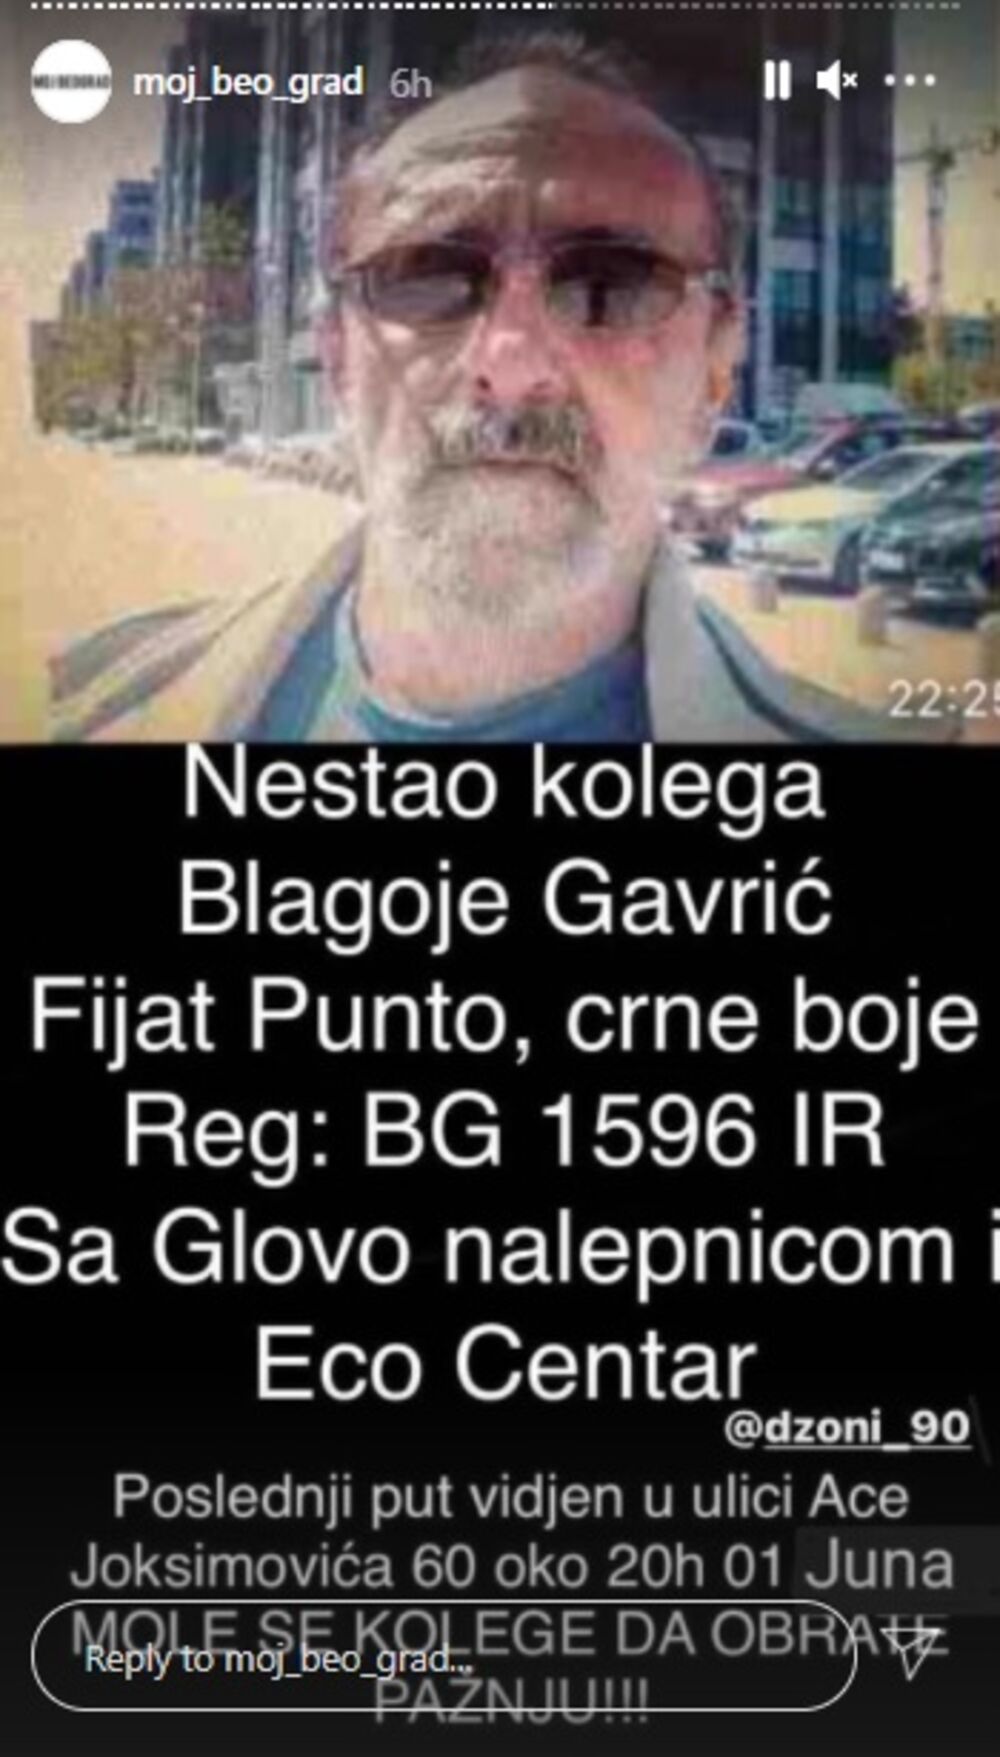 Blagoje Gavrić